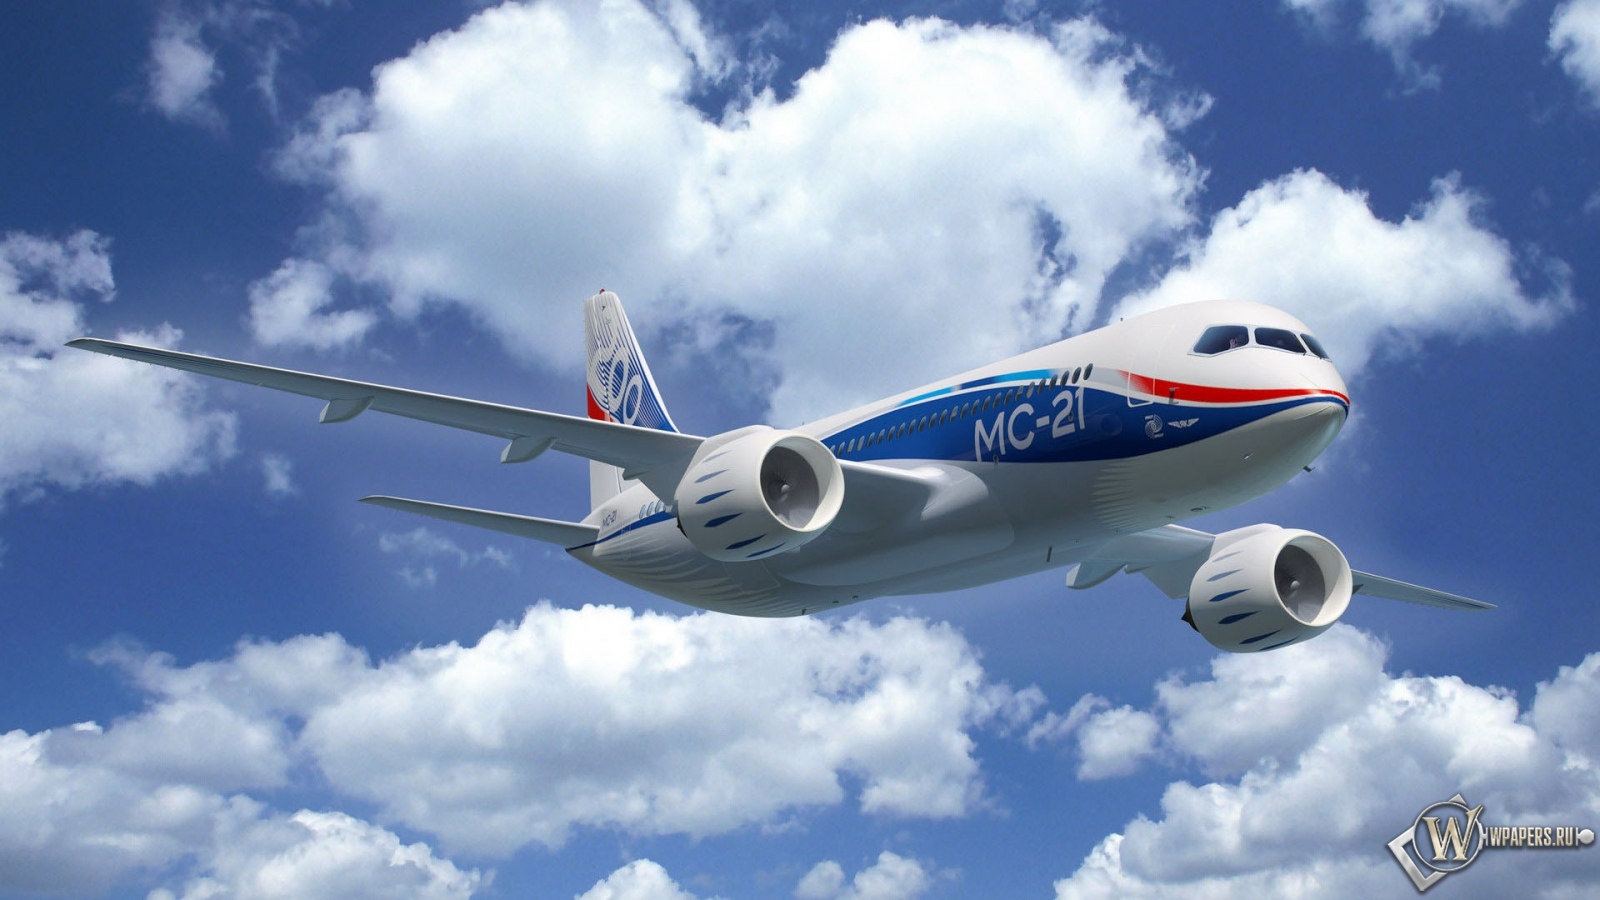 Самолет MC-21 1600x900